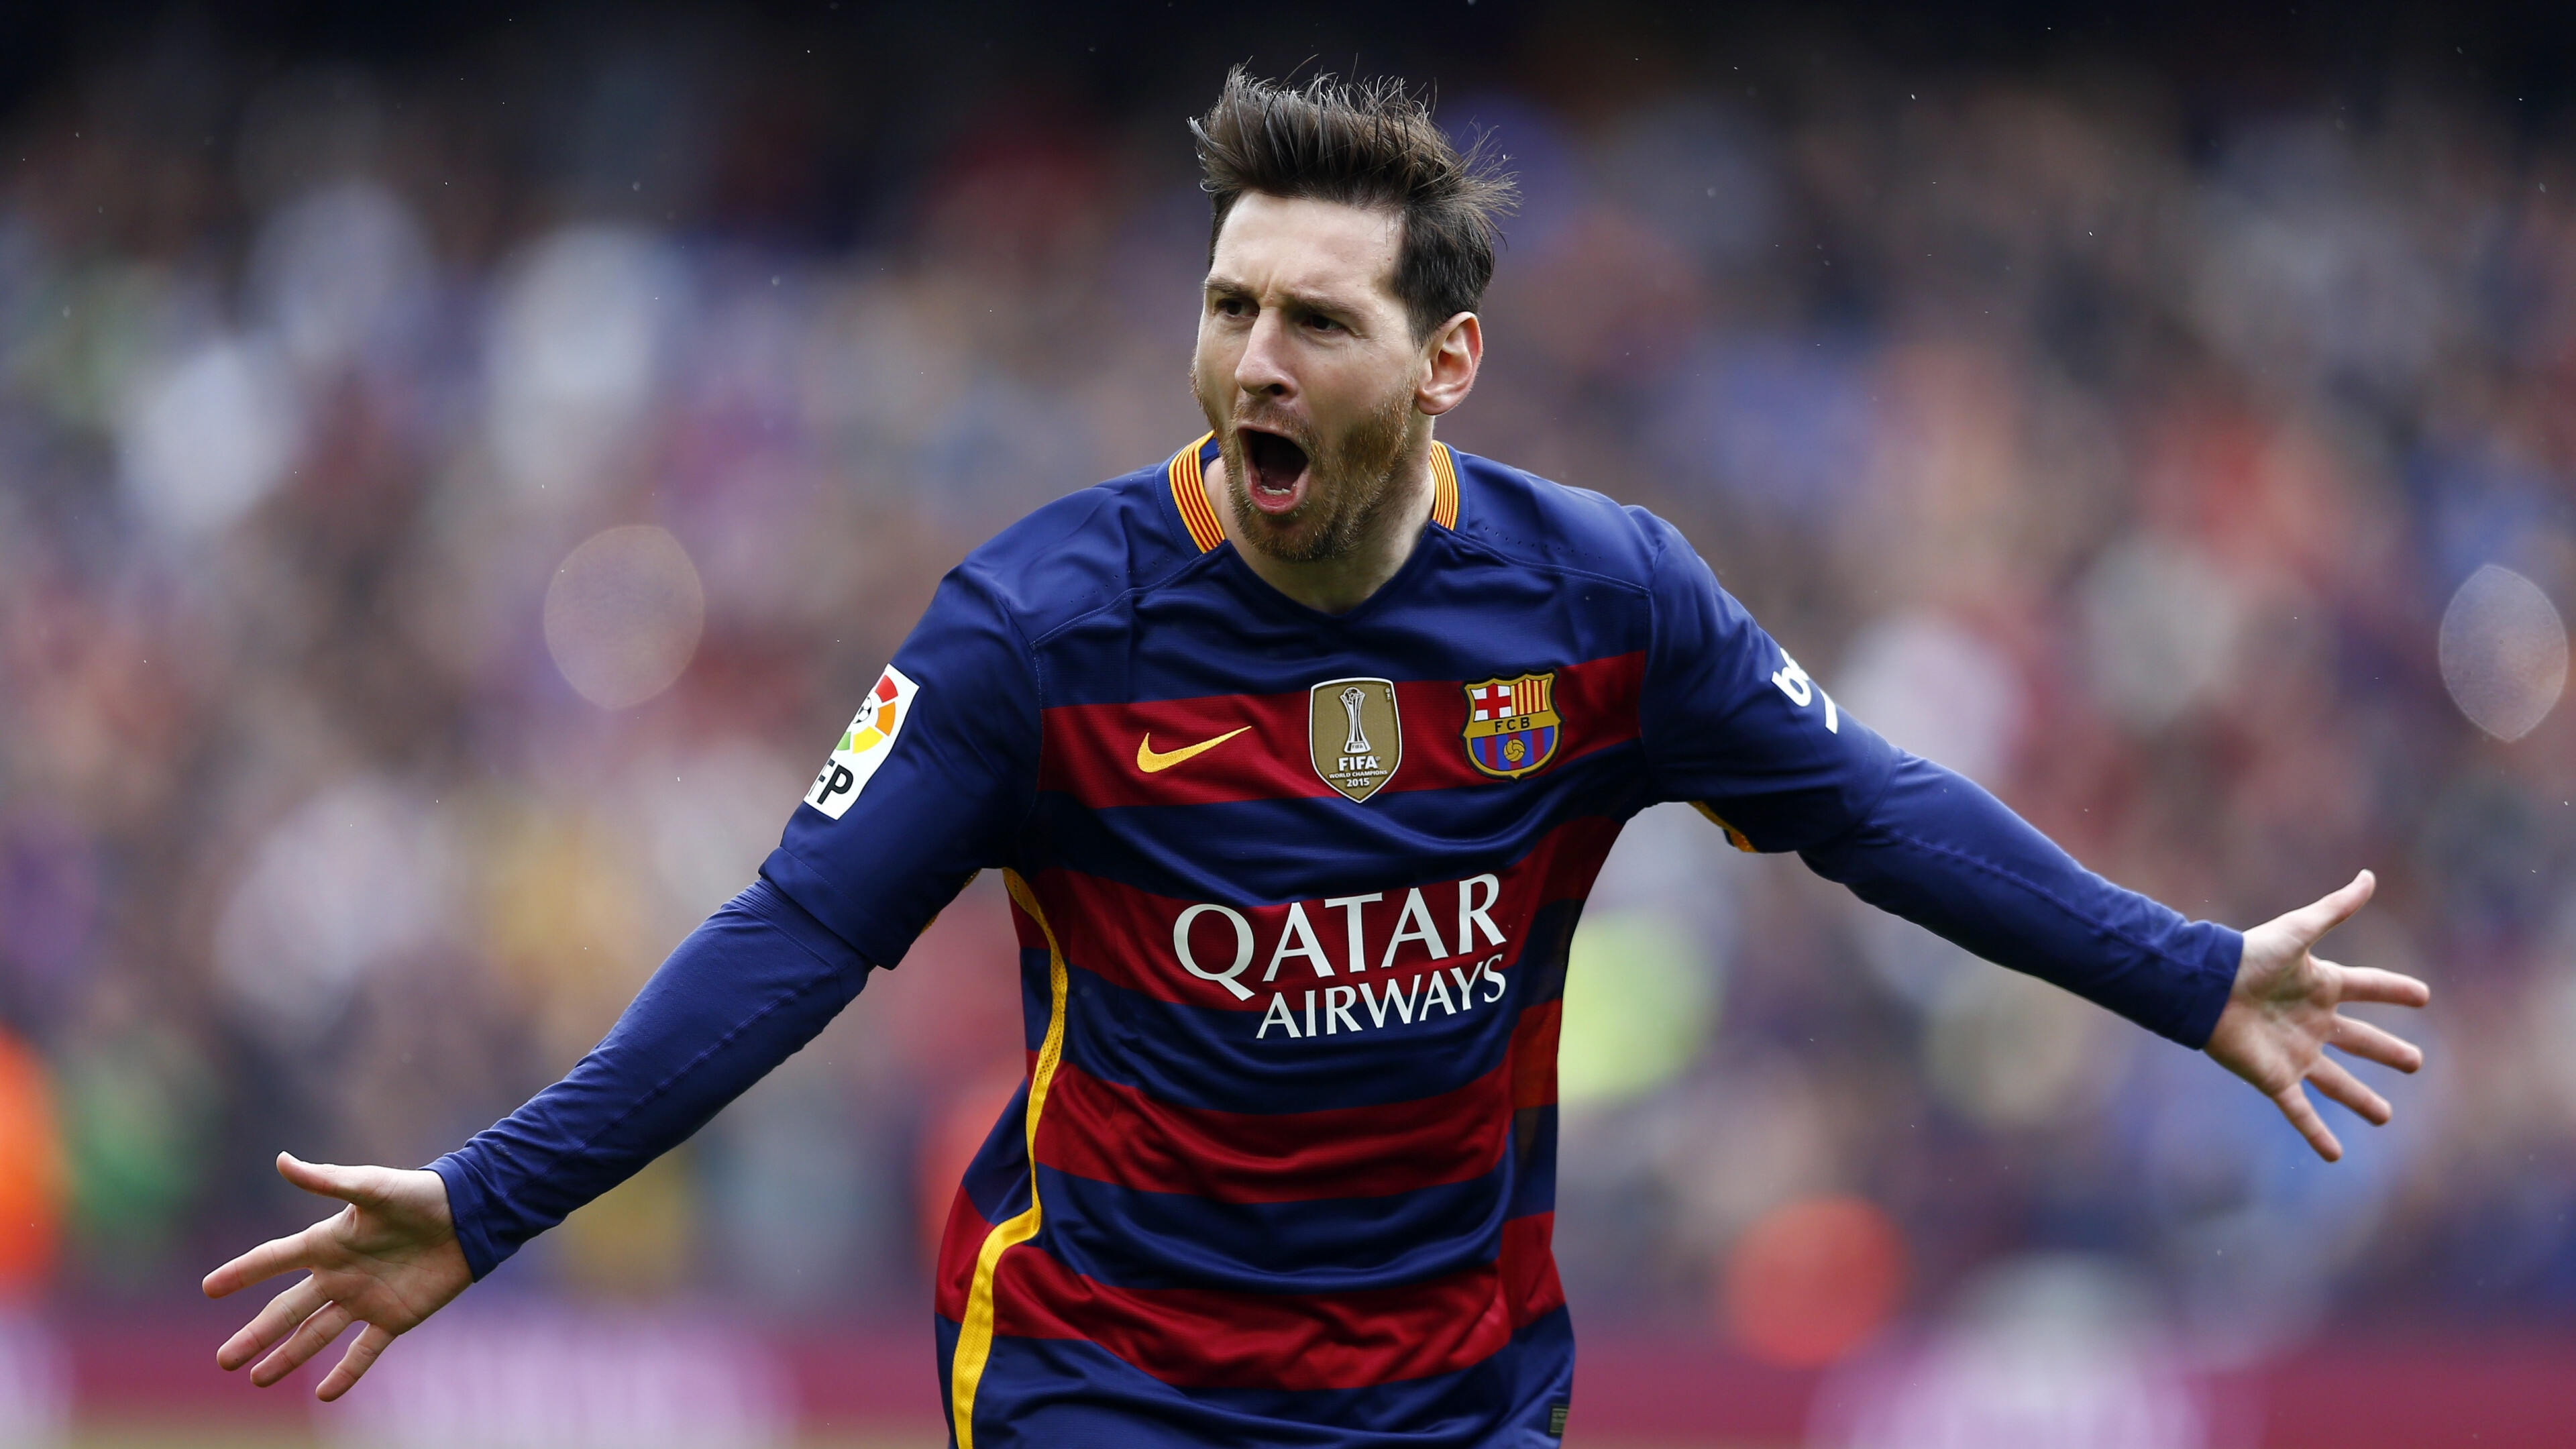 Lionel Messi, Goal celebration wallpaper, Celebrity athlete, Breathtaking skills, 3840x2160 4K Desktop